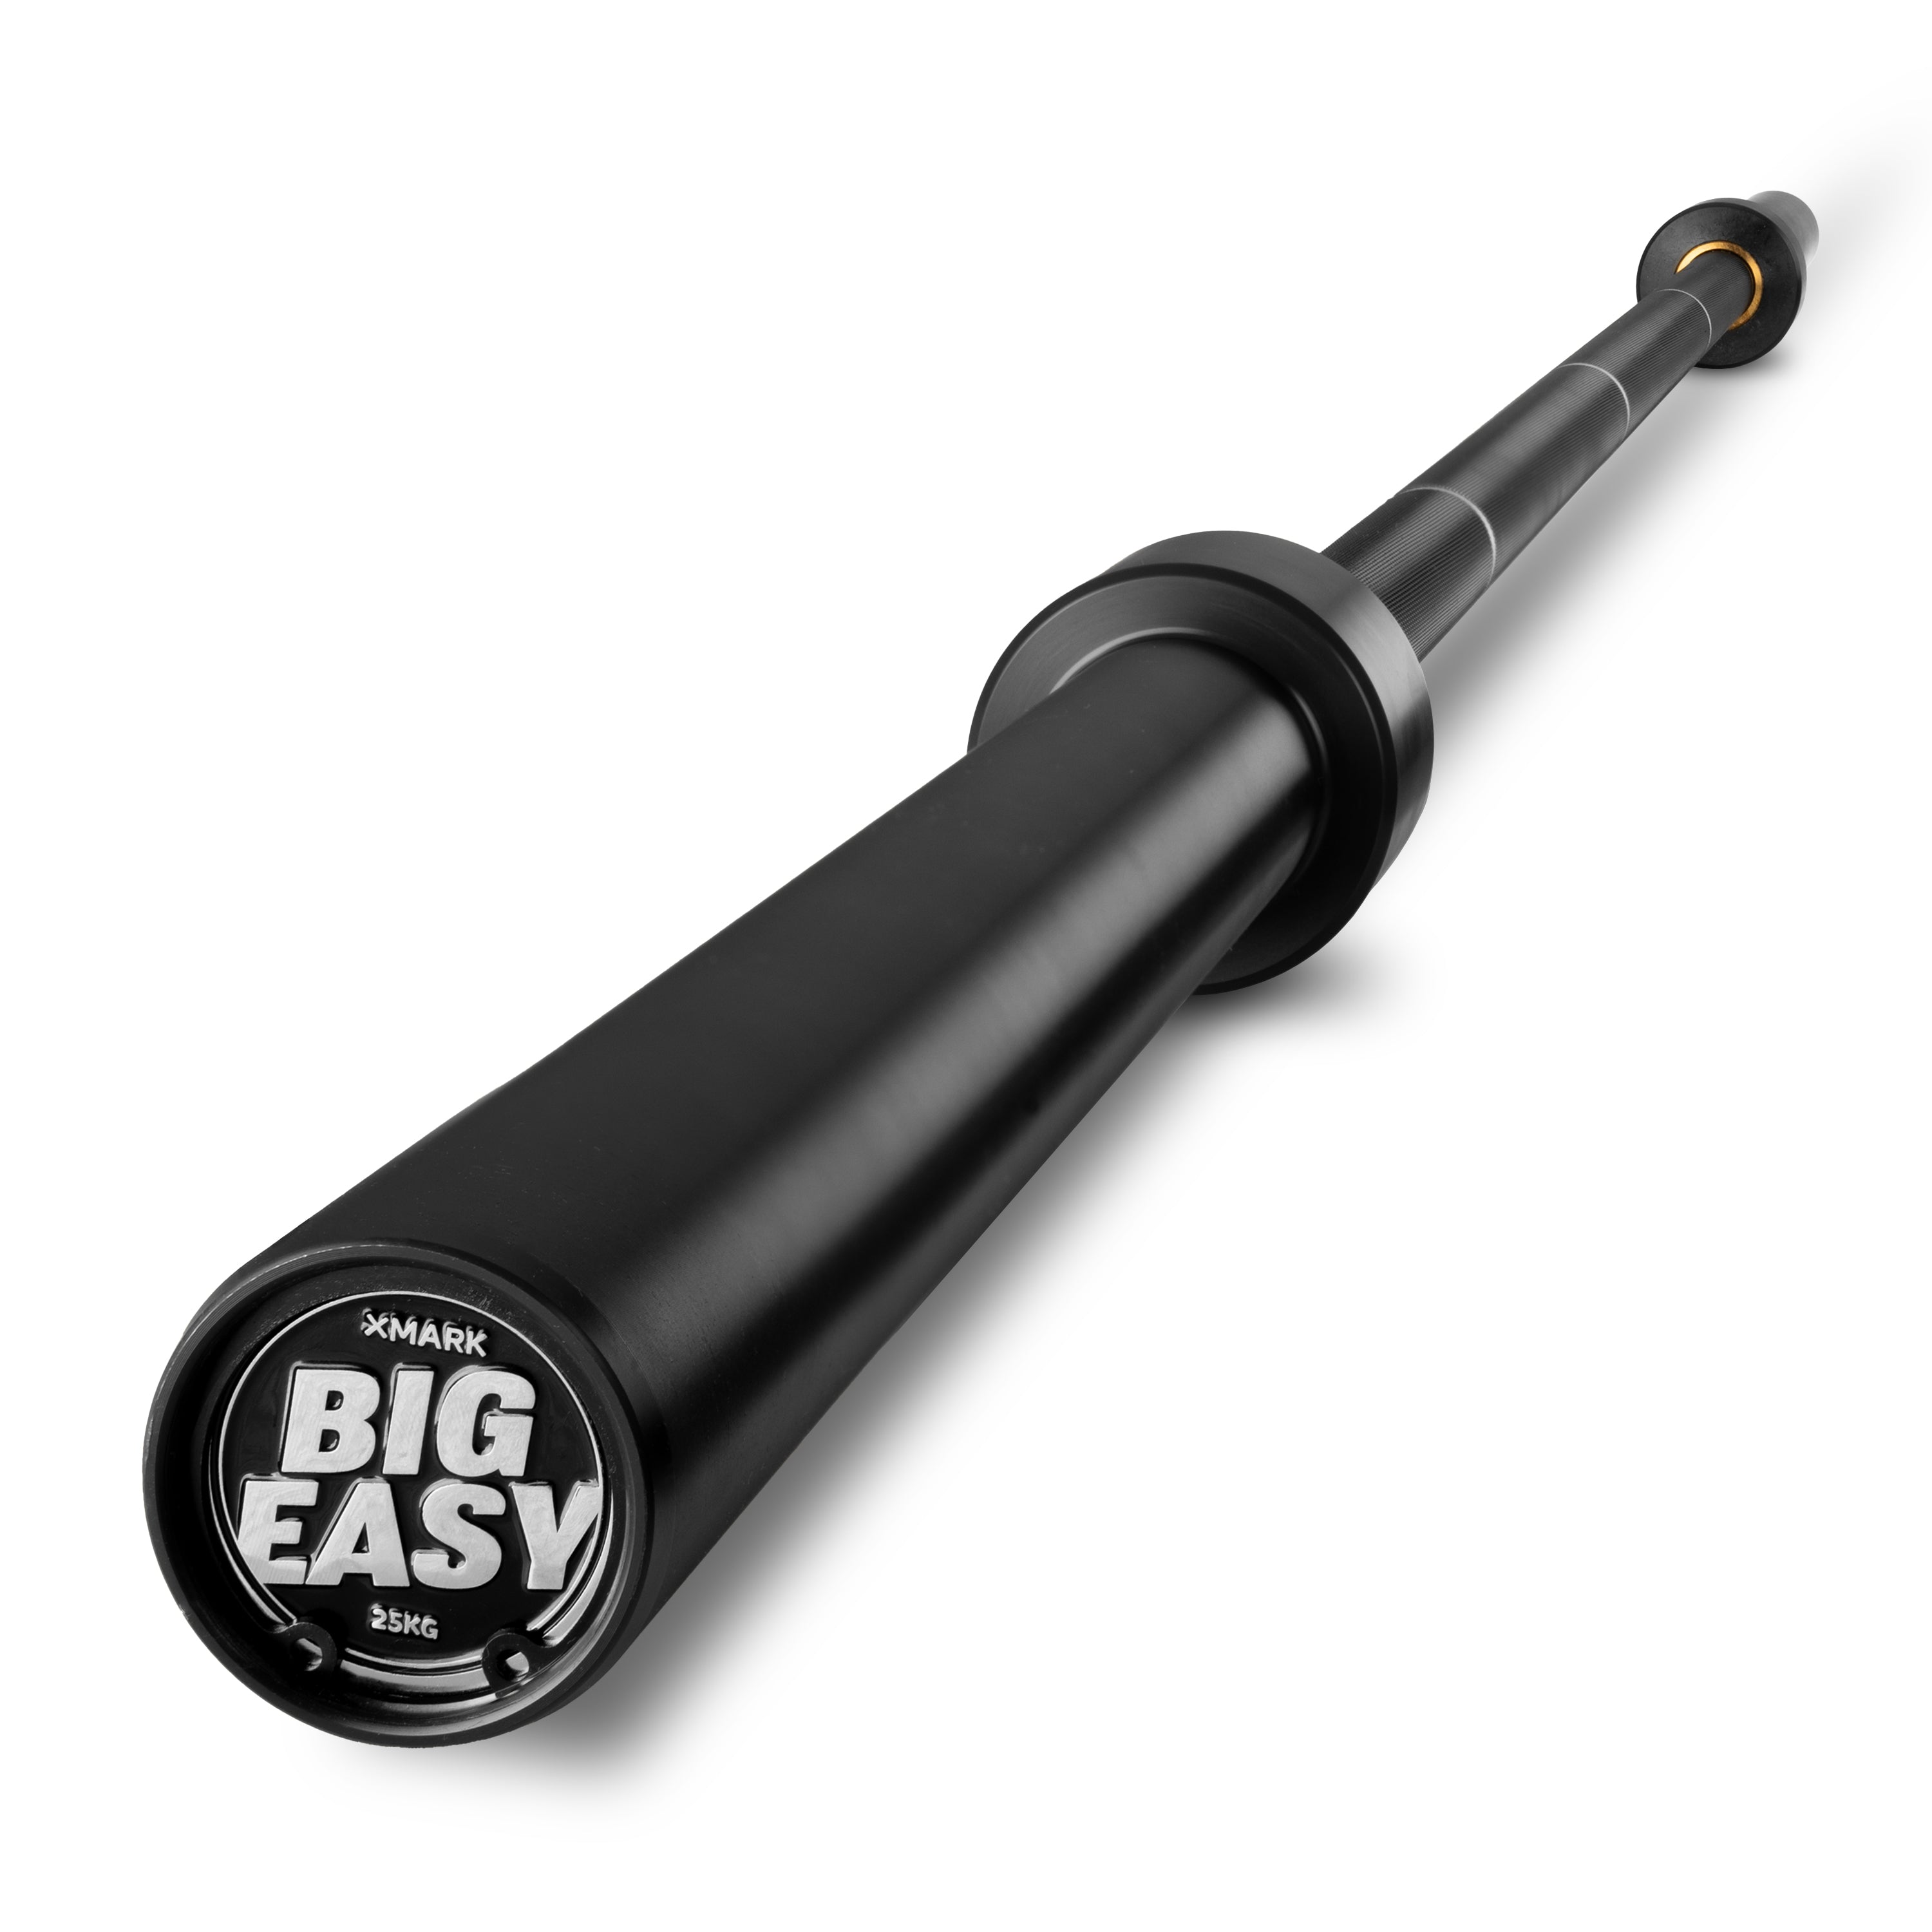 The Big Easy: 32mm Squat Bar